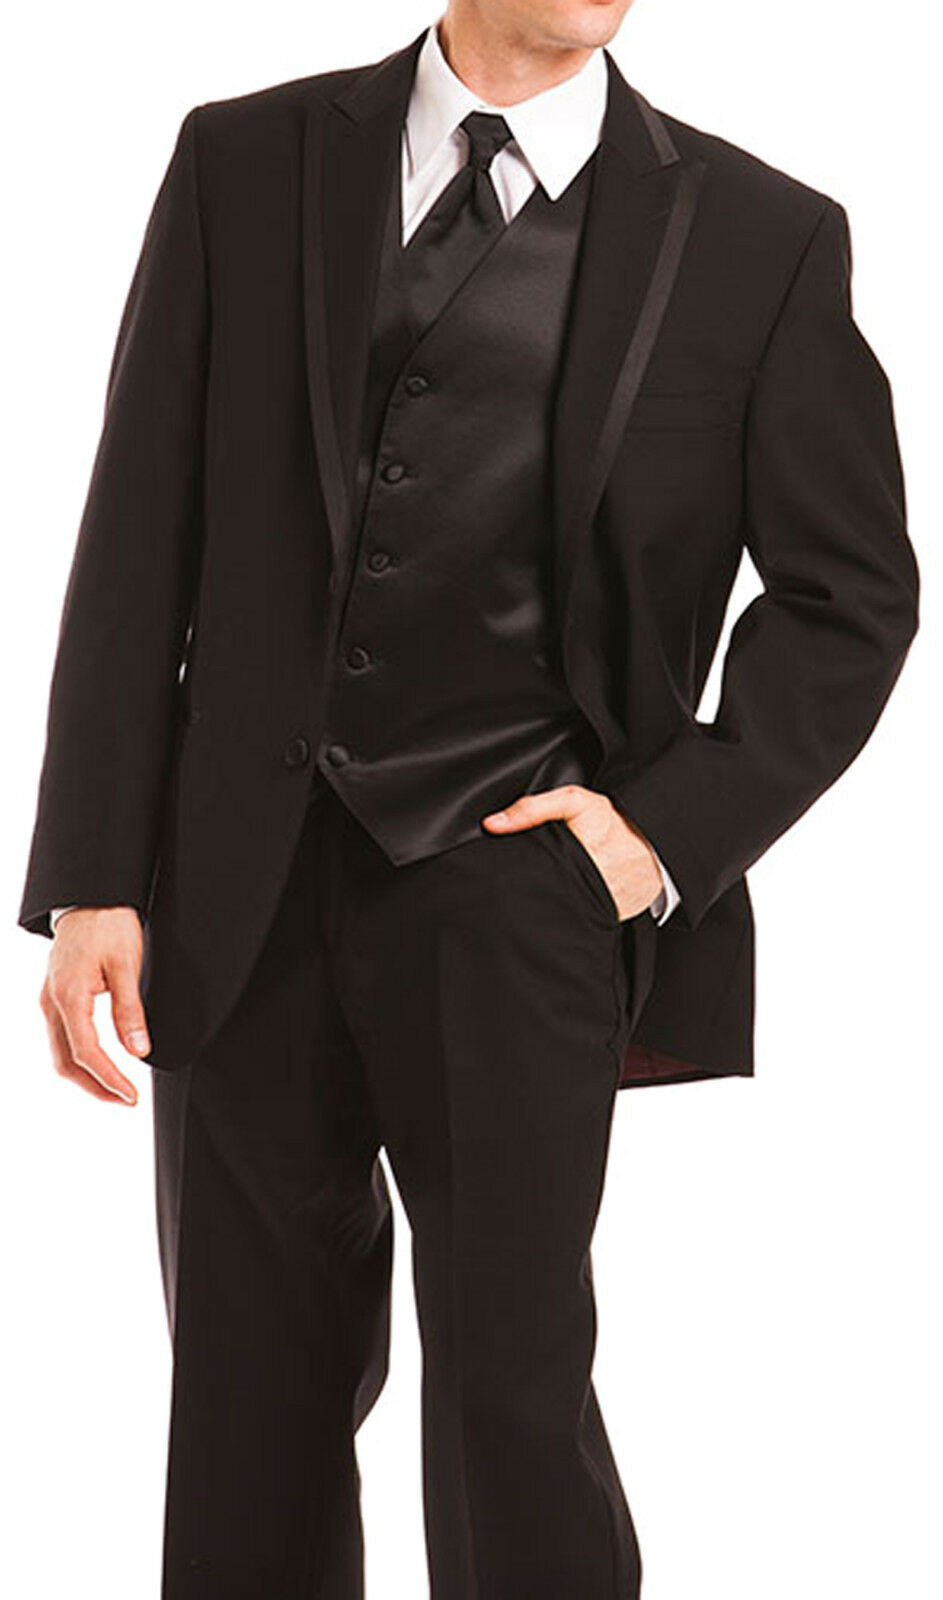 Black Calvin Klein Arden Tuxedo With Flat Front Pants Cummerbund & Bow Tie Prom